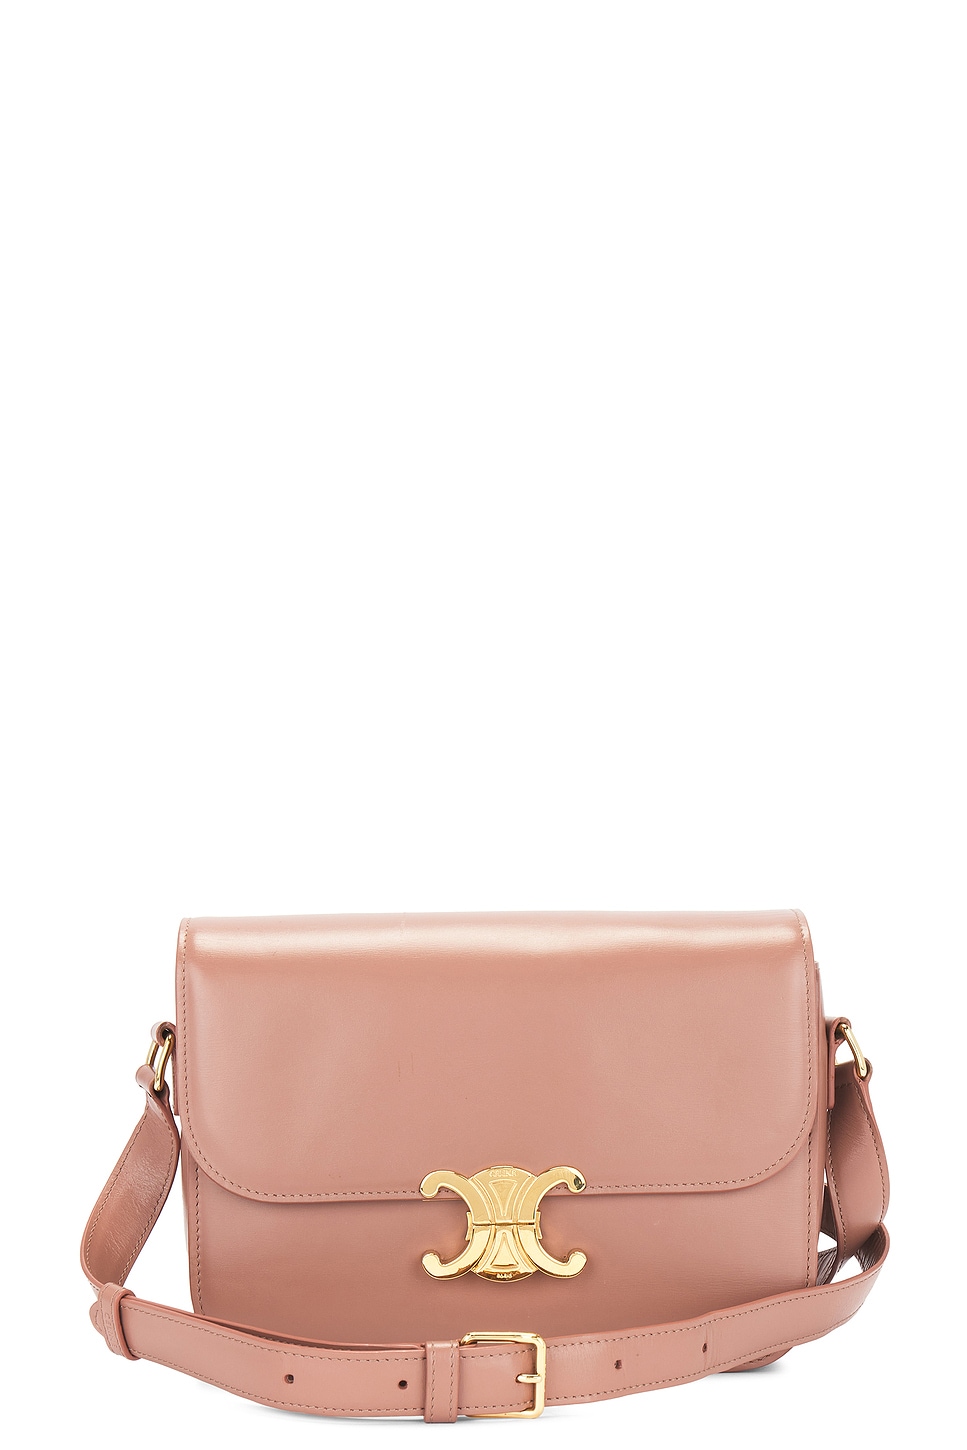 Celine Triomphe Classique Shoulder Bag In Pink